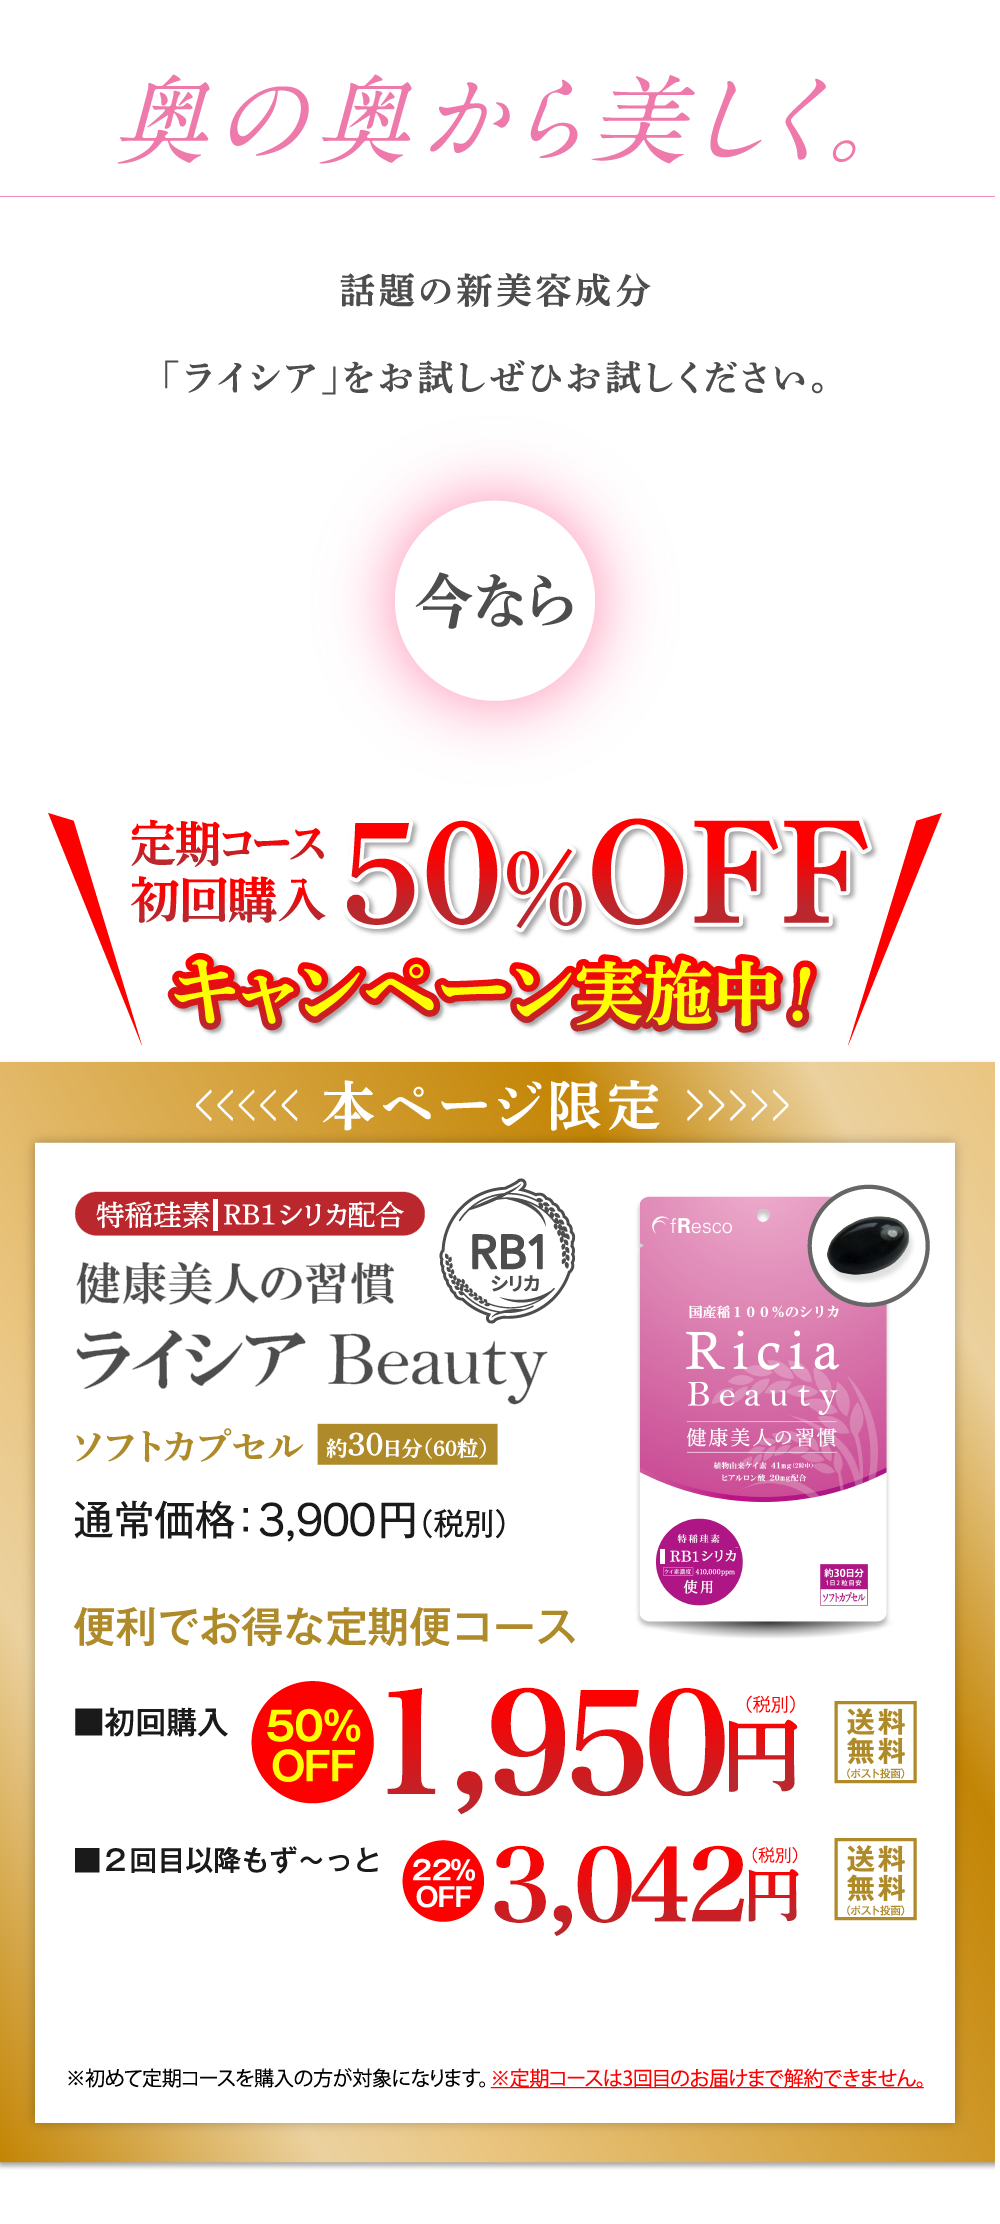 Ricia Beauty定期購入